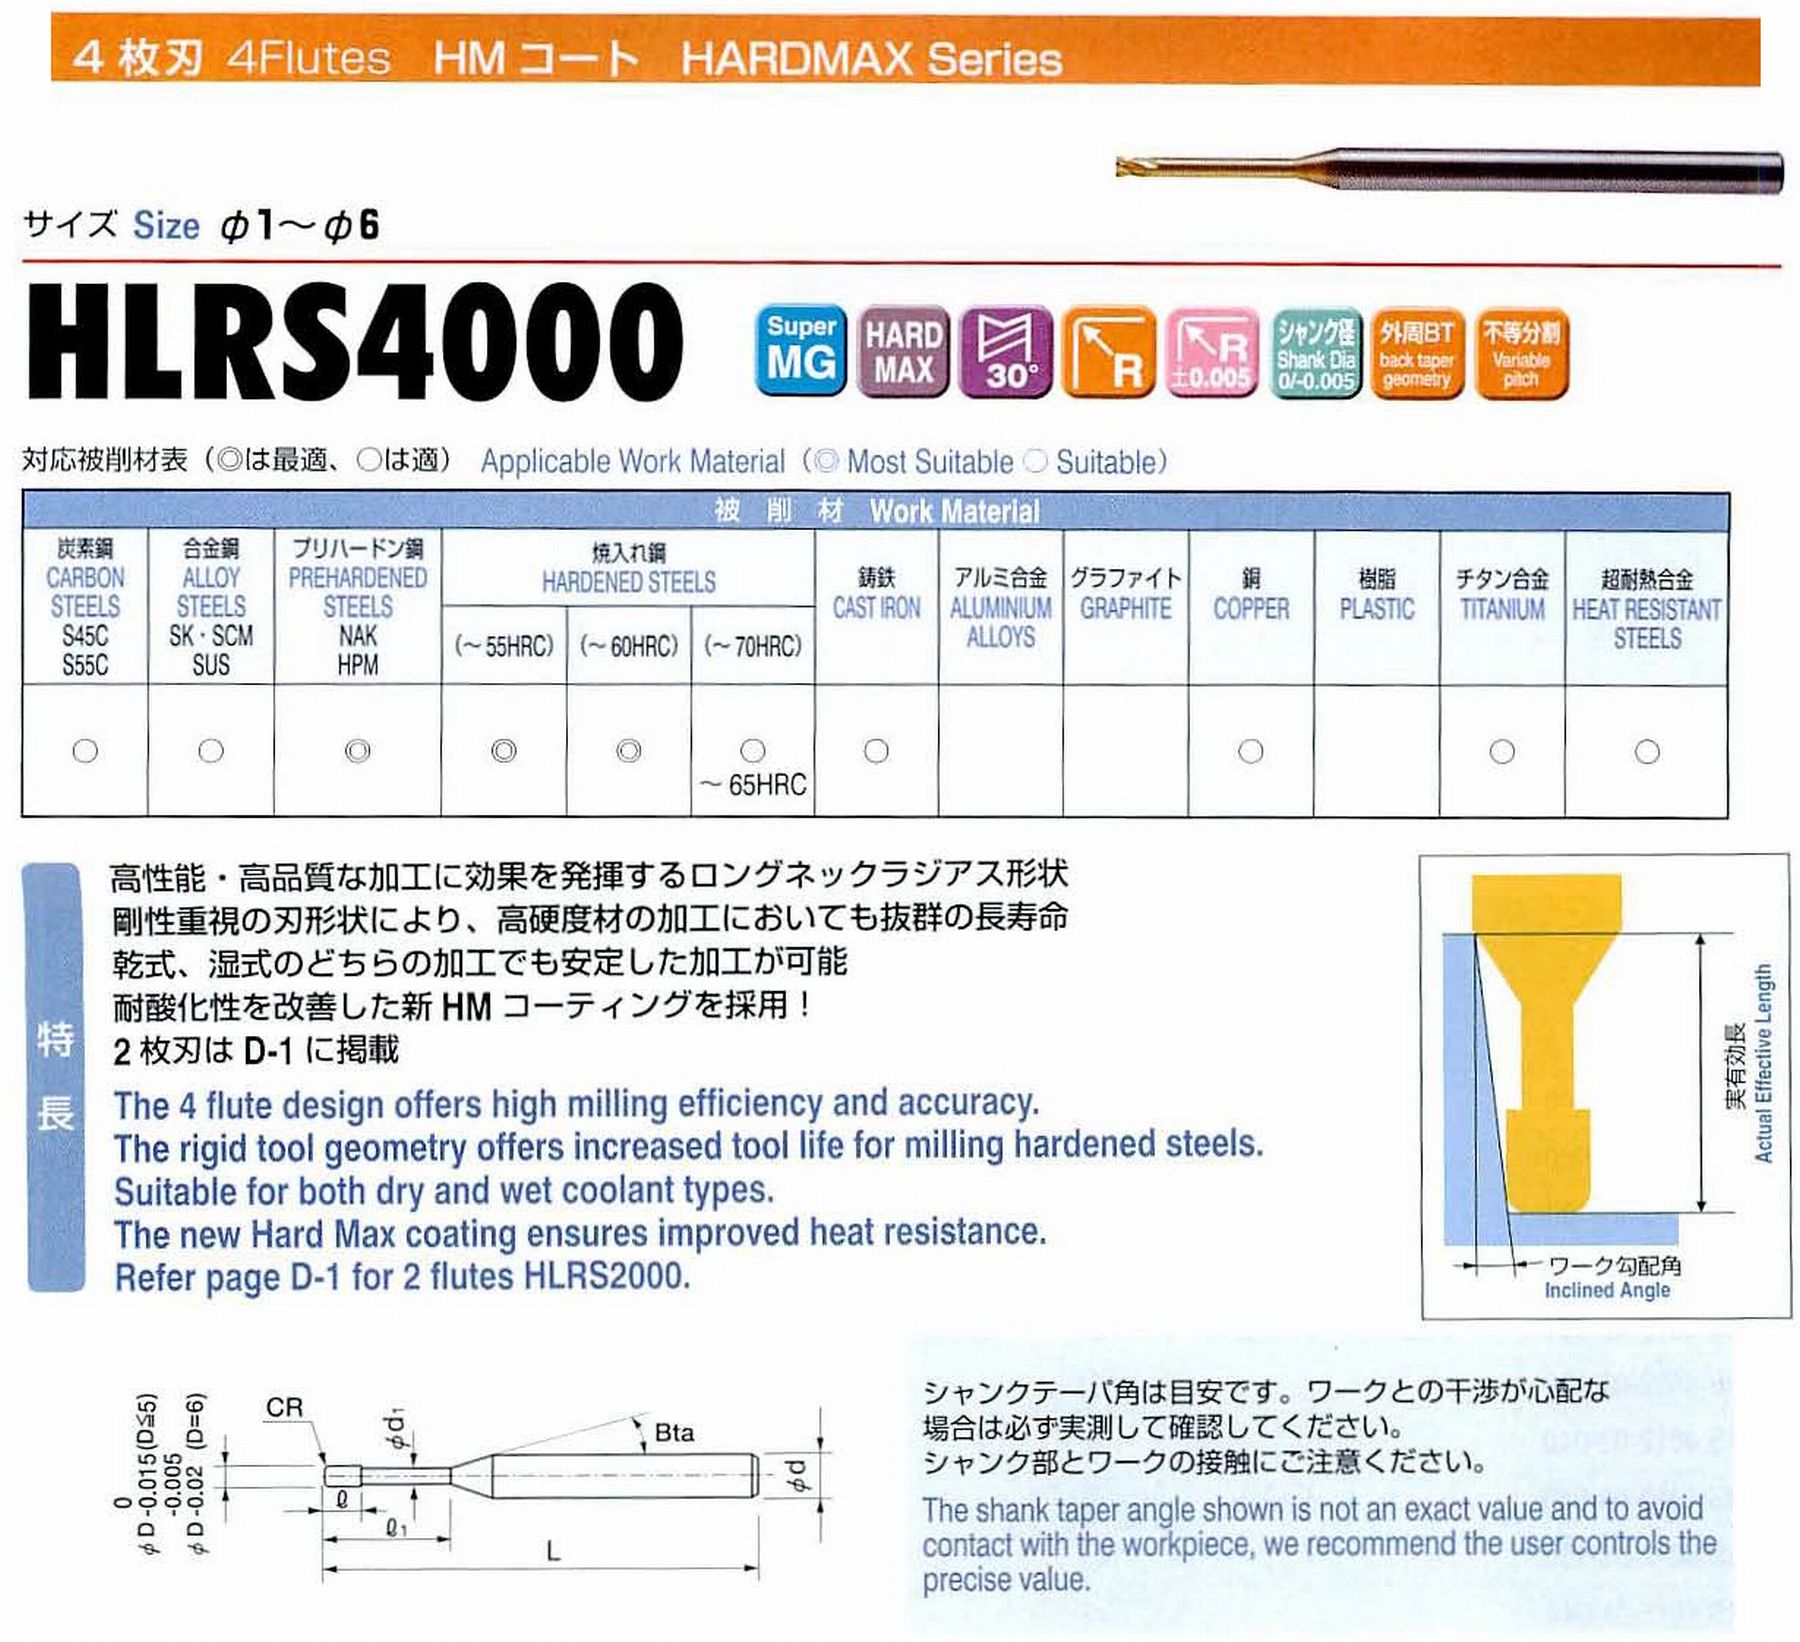 ユニオンツール 4枚刃 HLRS4010-005-020 外径1 コーナ半径R0.05 有効長2 刃長0.8 首径0.95 シャンクテーパ角16° 全長50 シャンク径4